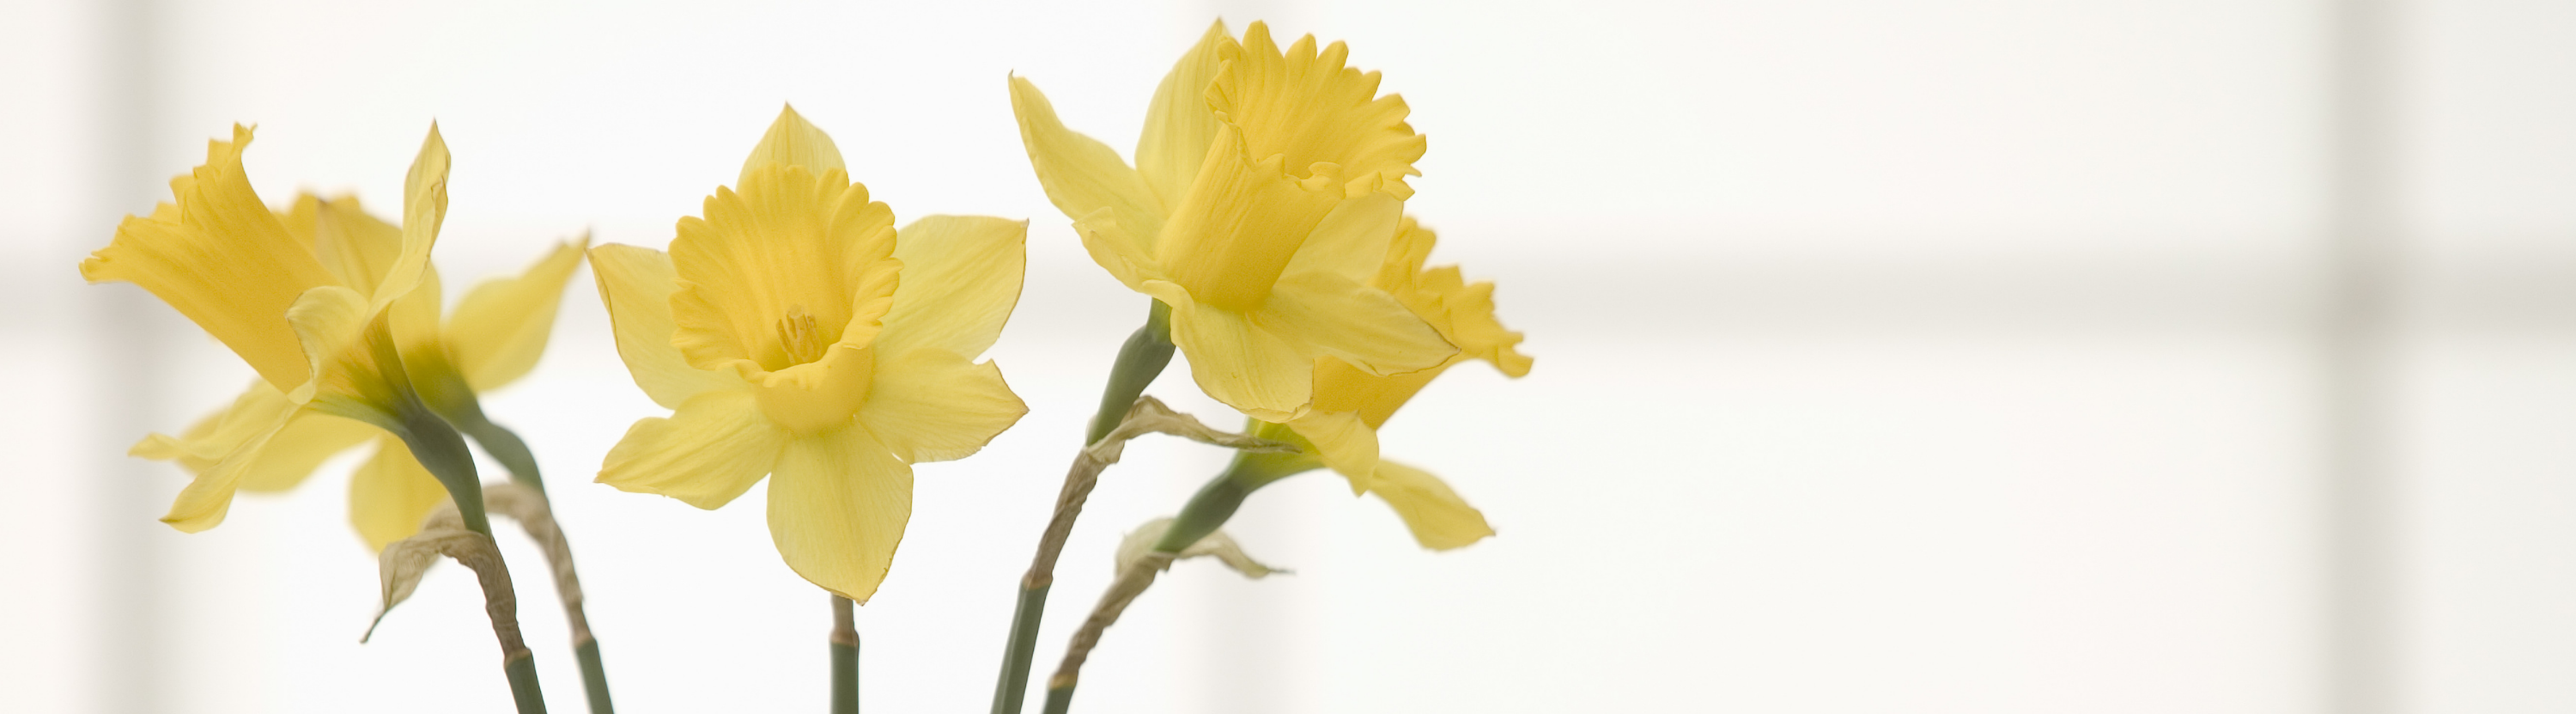 Three daffodils